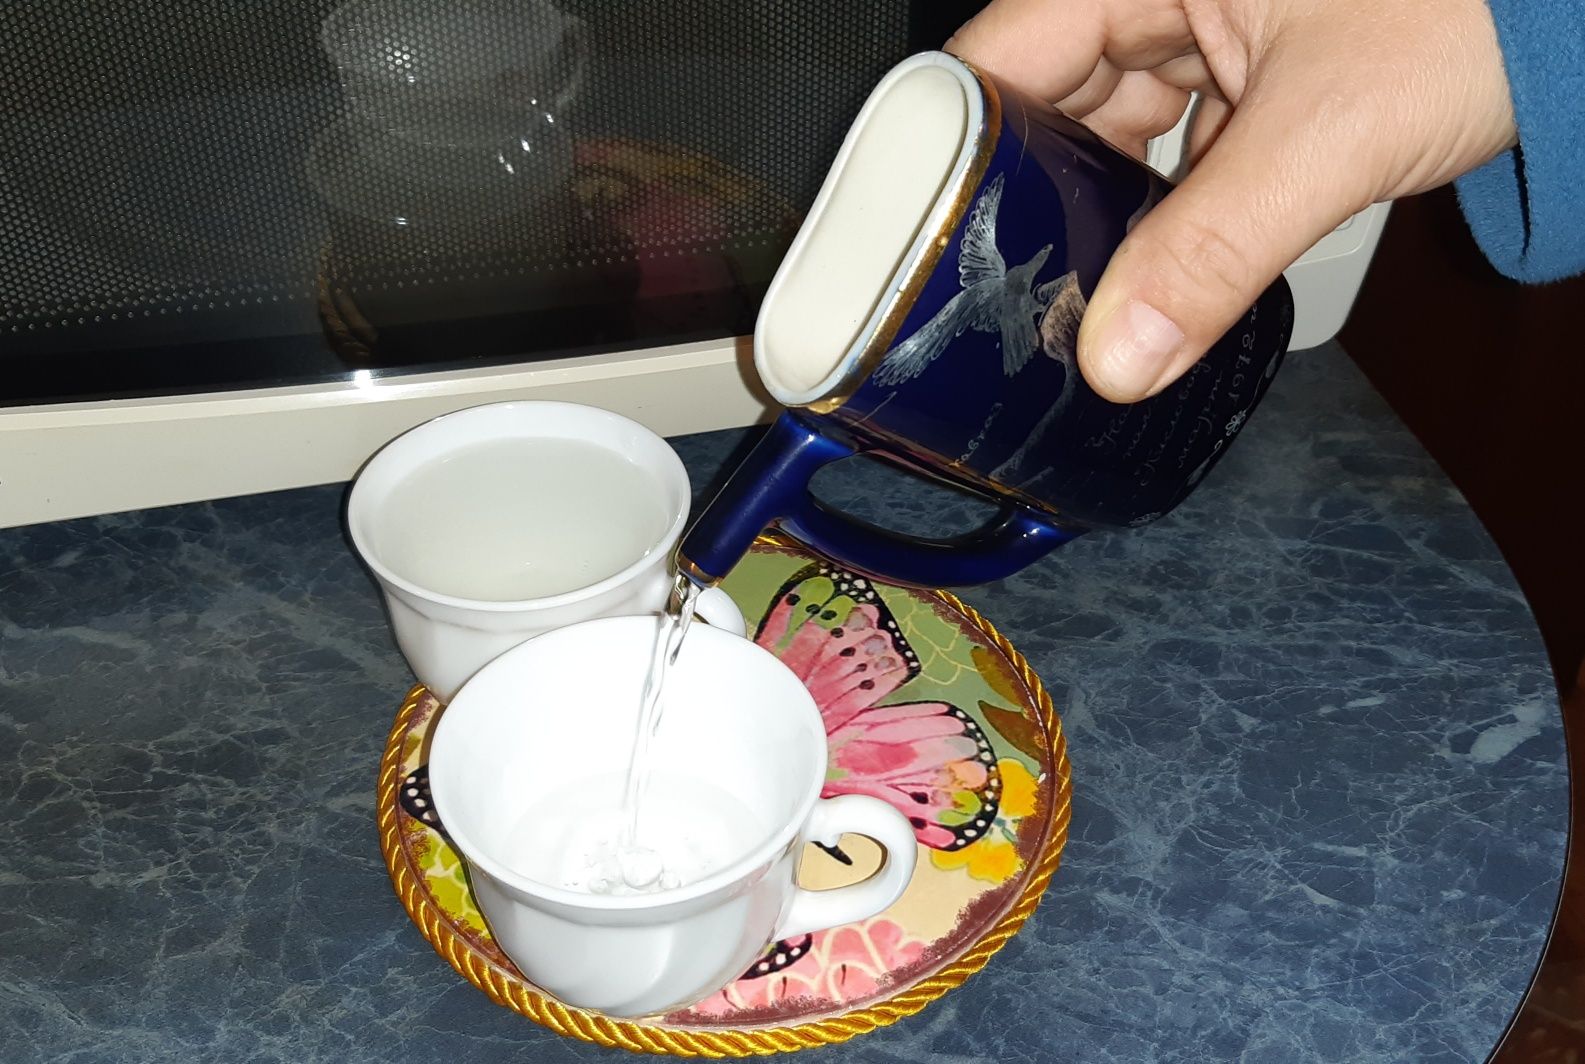 Заварник для лечебного чая в пакетиках (позолота, кобальт)